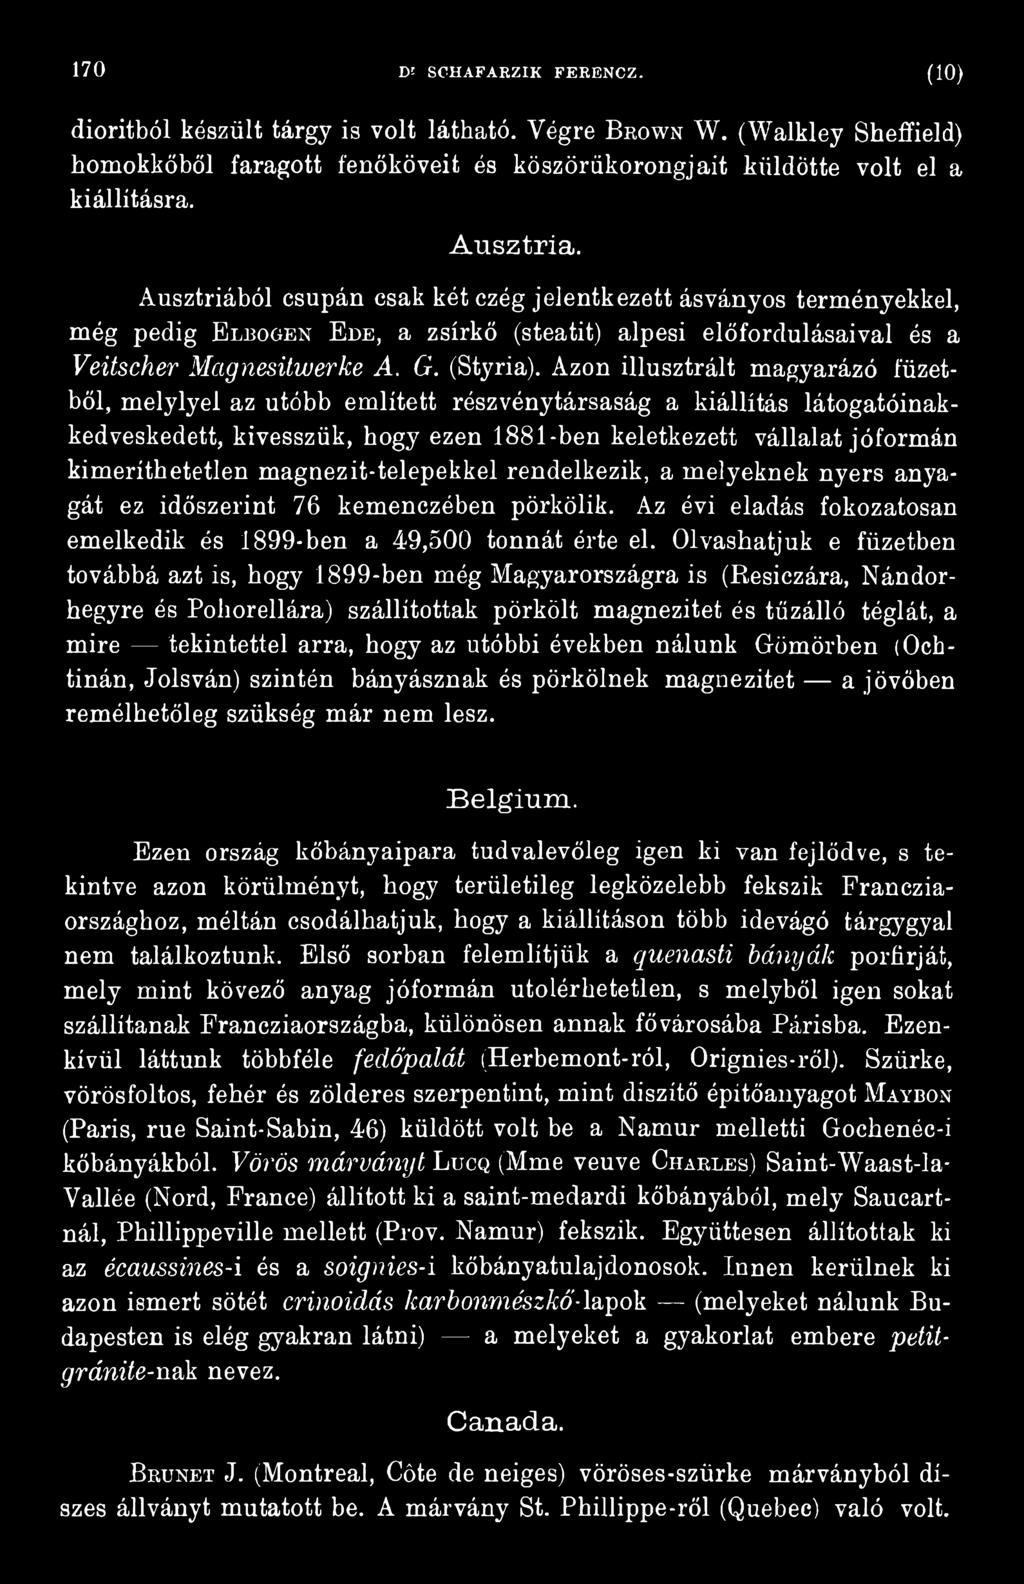 Olvashatjuk e füzetben továbbá azt is, hogy 1899-ben még Magyarországra is (Resiczára, Nándorhegyre és Poliorellára) szállítottak pörkölt magnezitet és tűzálló téglát, a mire tekintettel arra, hogy